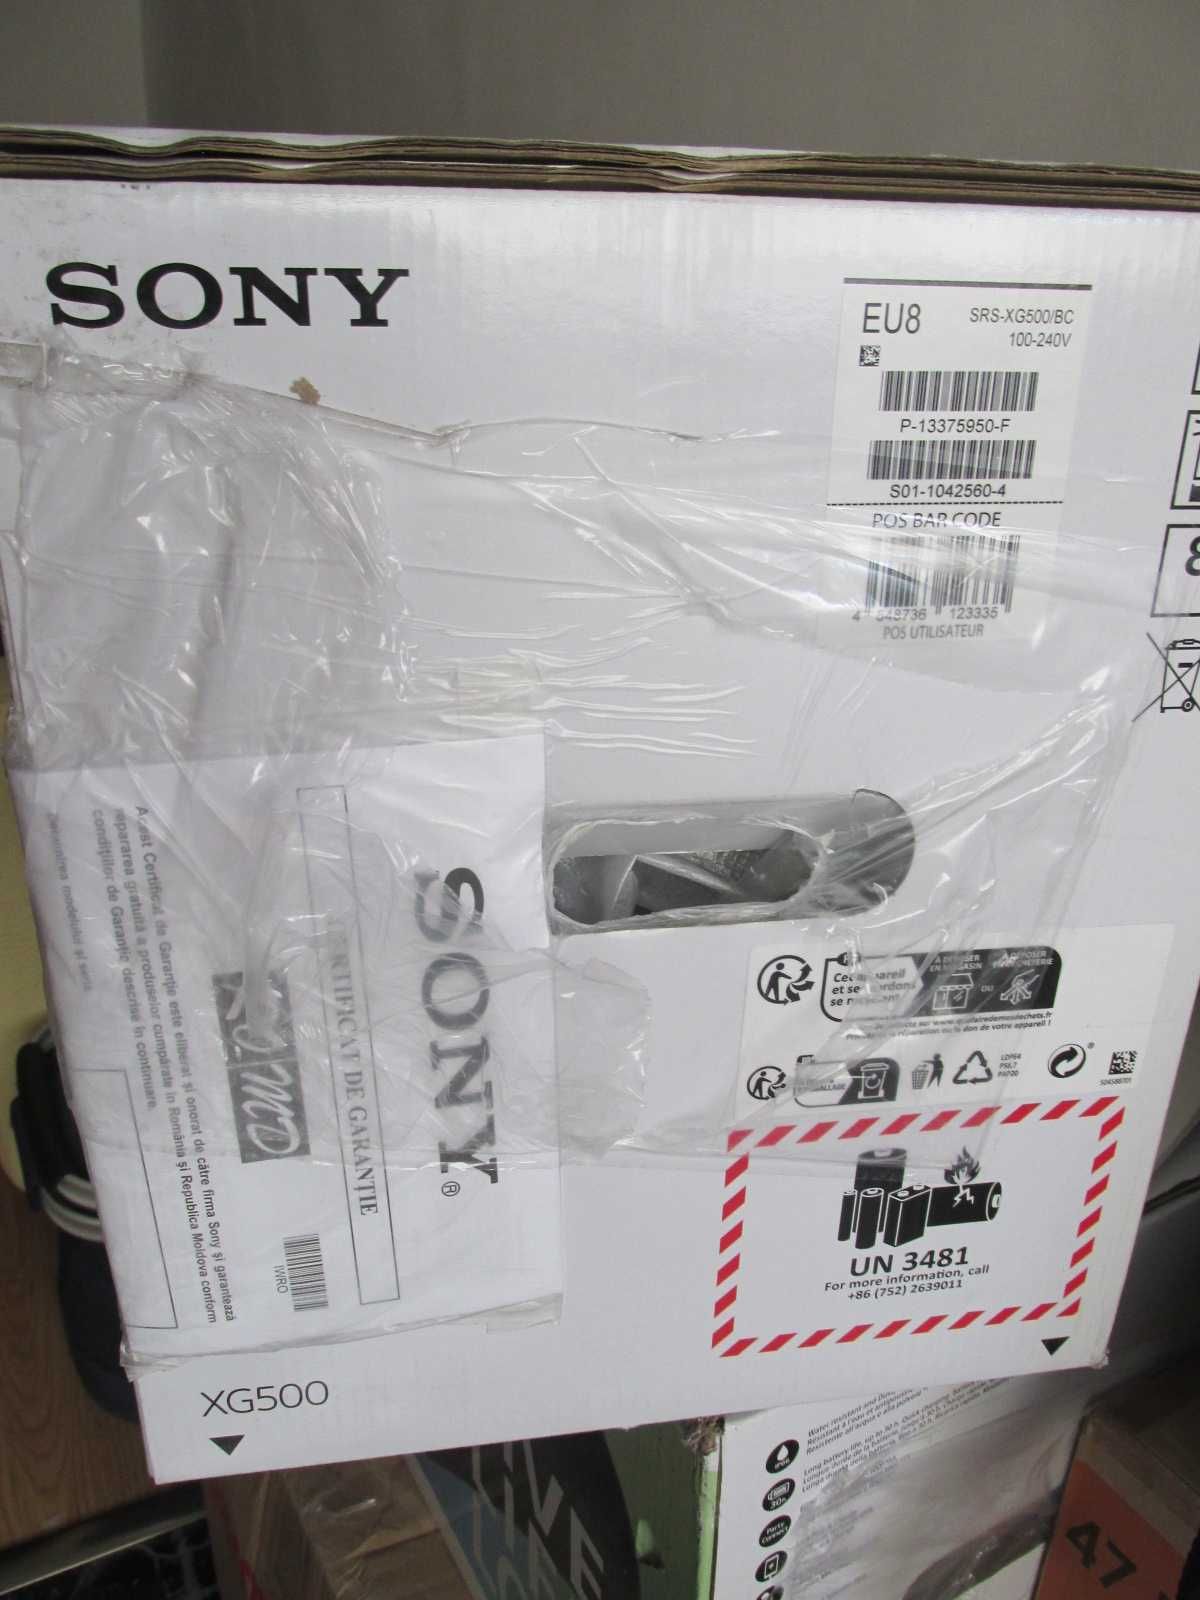 Boxa SONY SRS-XG500, MEGA BASS, Wireless, IP66, Party Connect